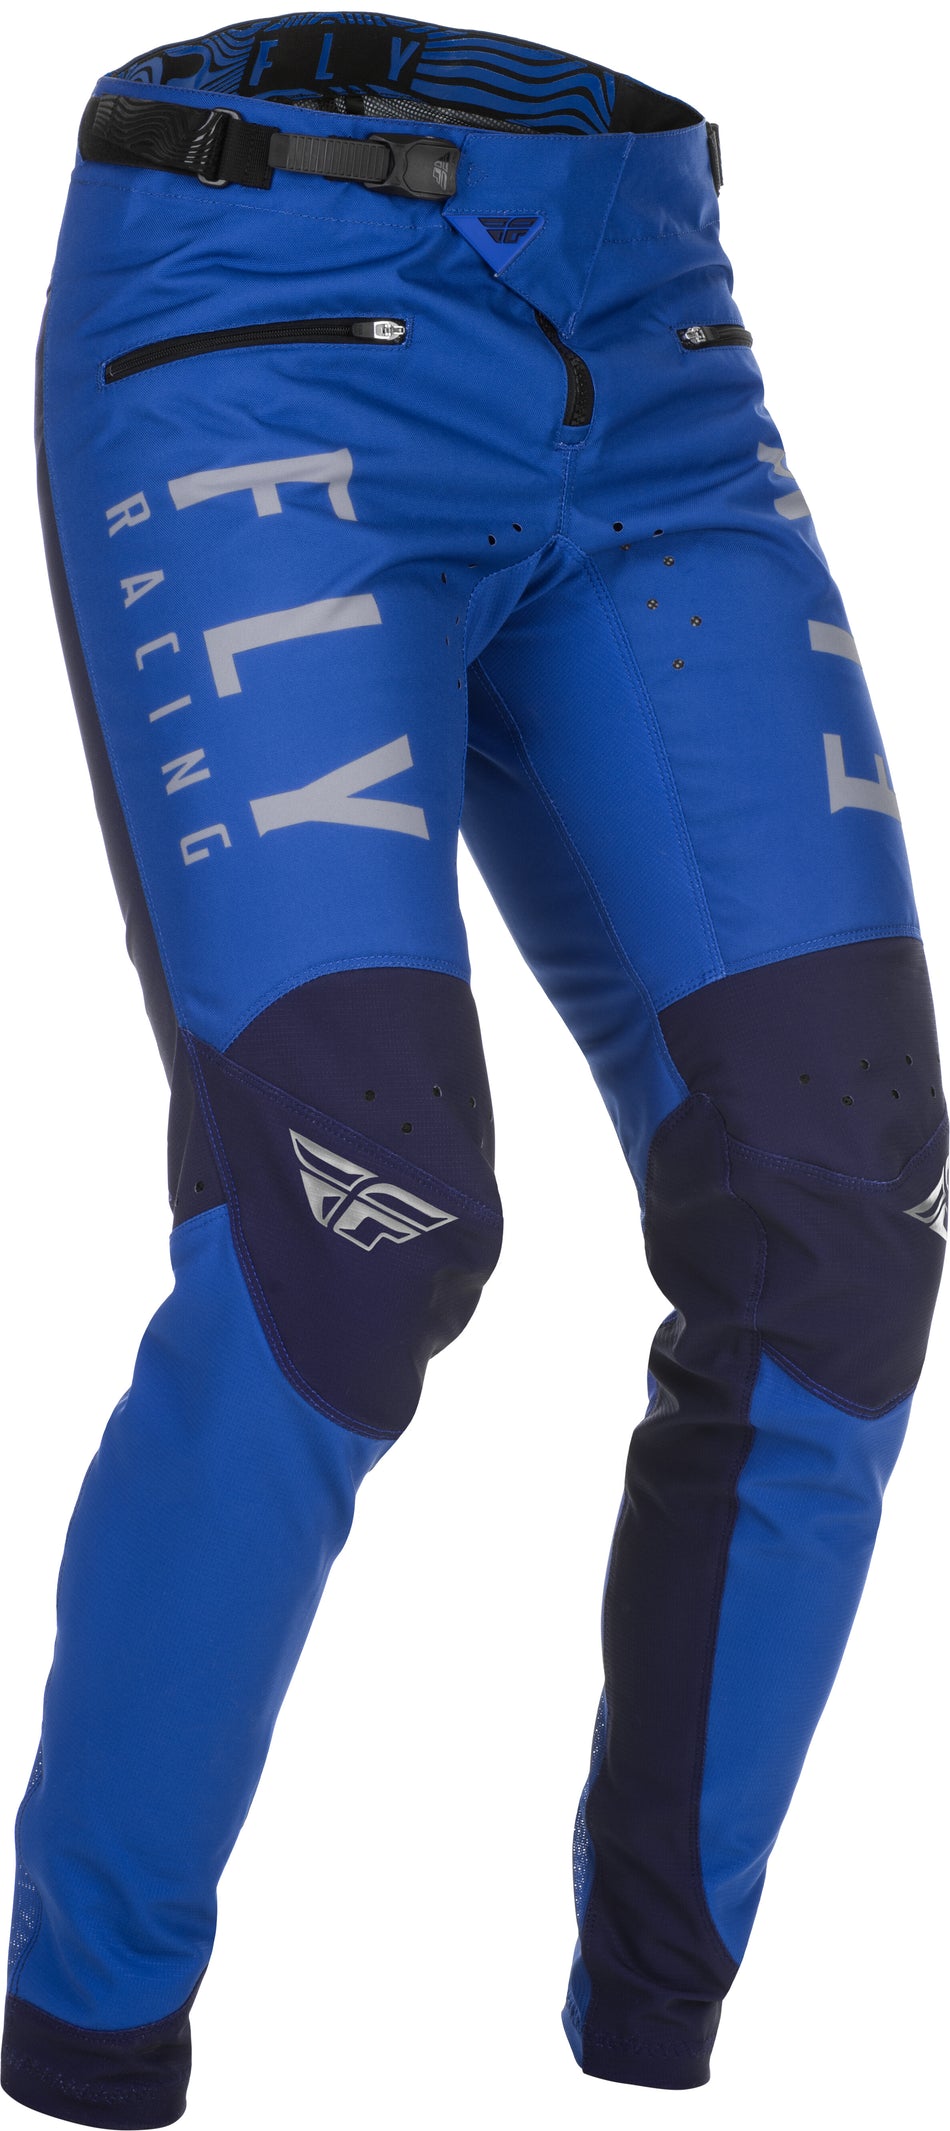 FLY RACING Kinetic Bicycle Pants Blue Sz 34 374-04134